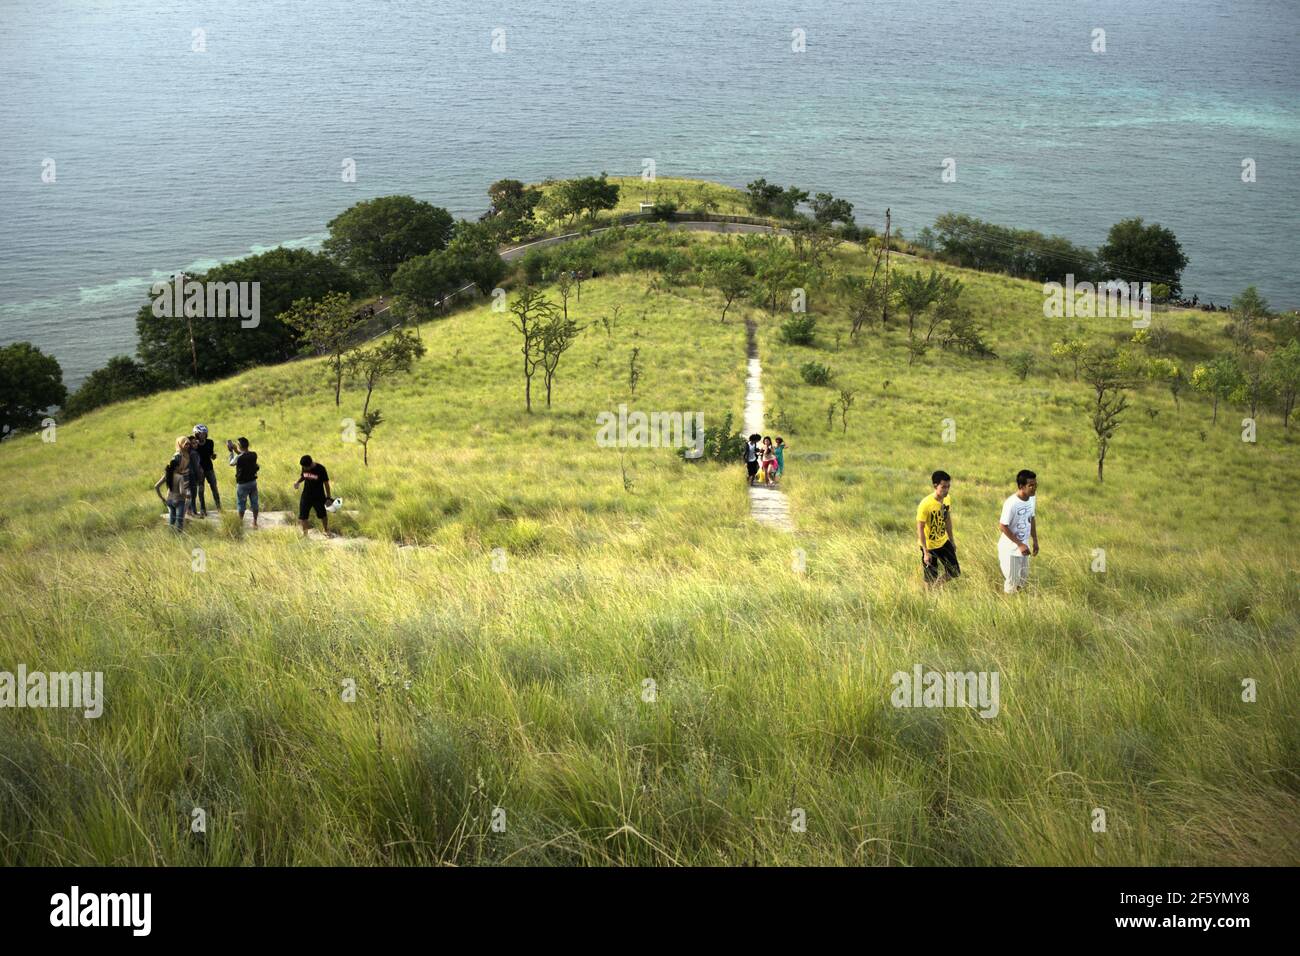 Junge Leute haben Freizeit, indem sie auf steinigen Stufen durch Grasland in Kajuwulu in der Nähe von Maumere, Flores Island, wandern. Stockfoto